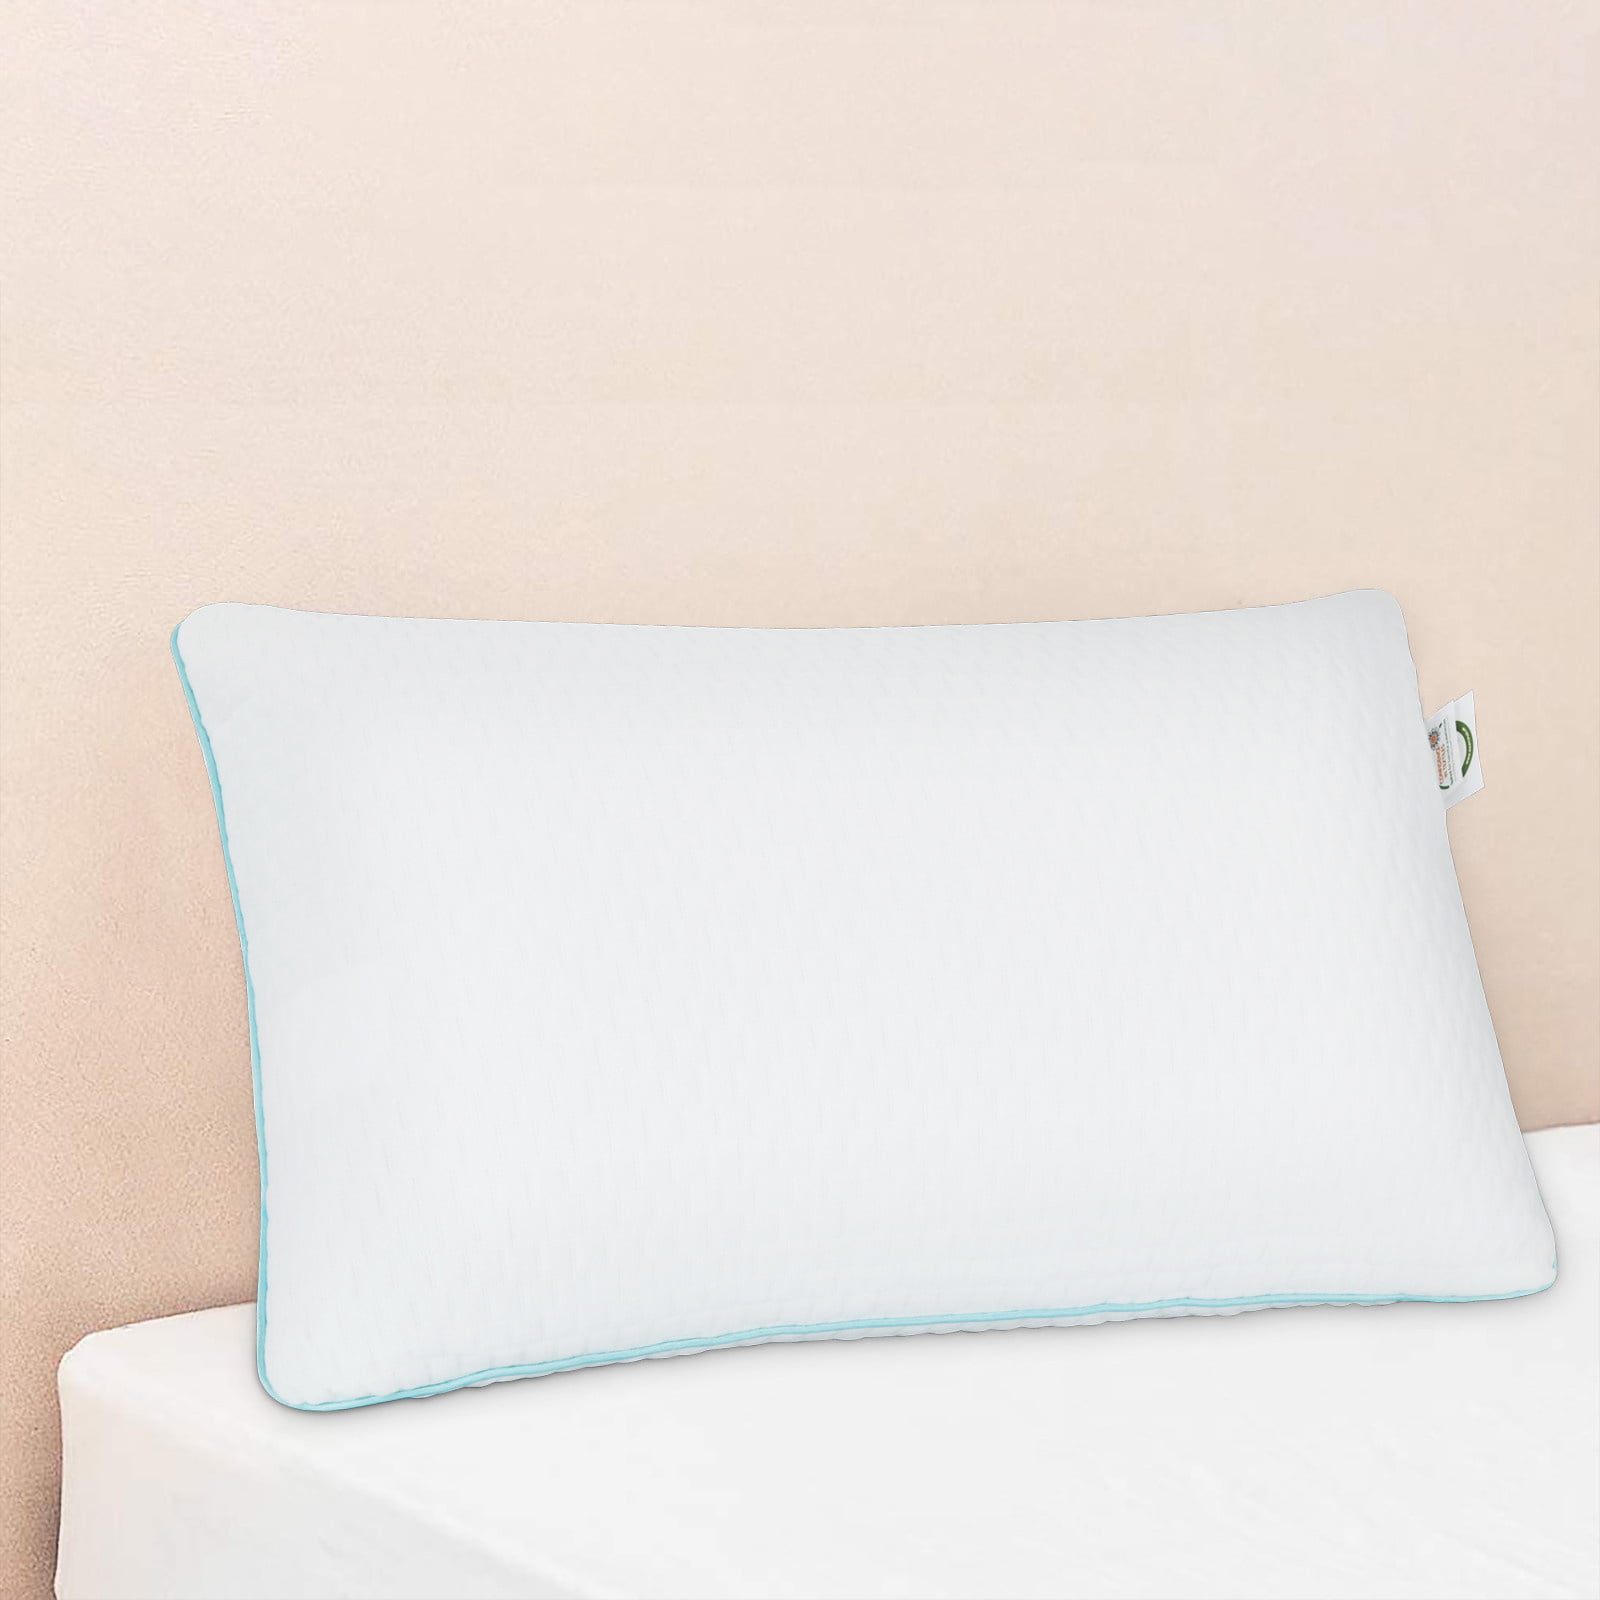 WynRest Gel Fiber 2 Queen Pillows found at  Wyndham Hotels 